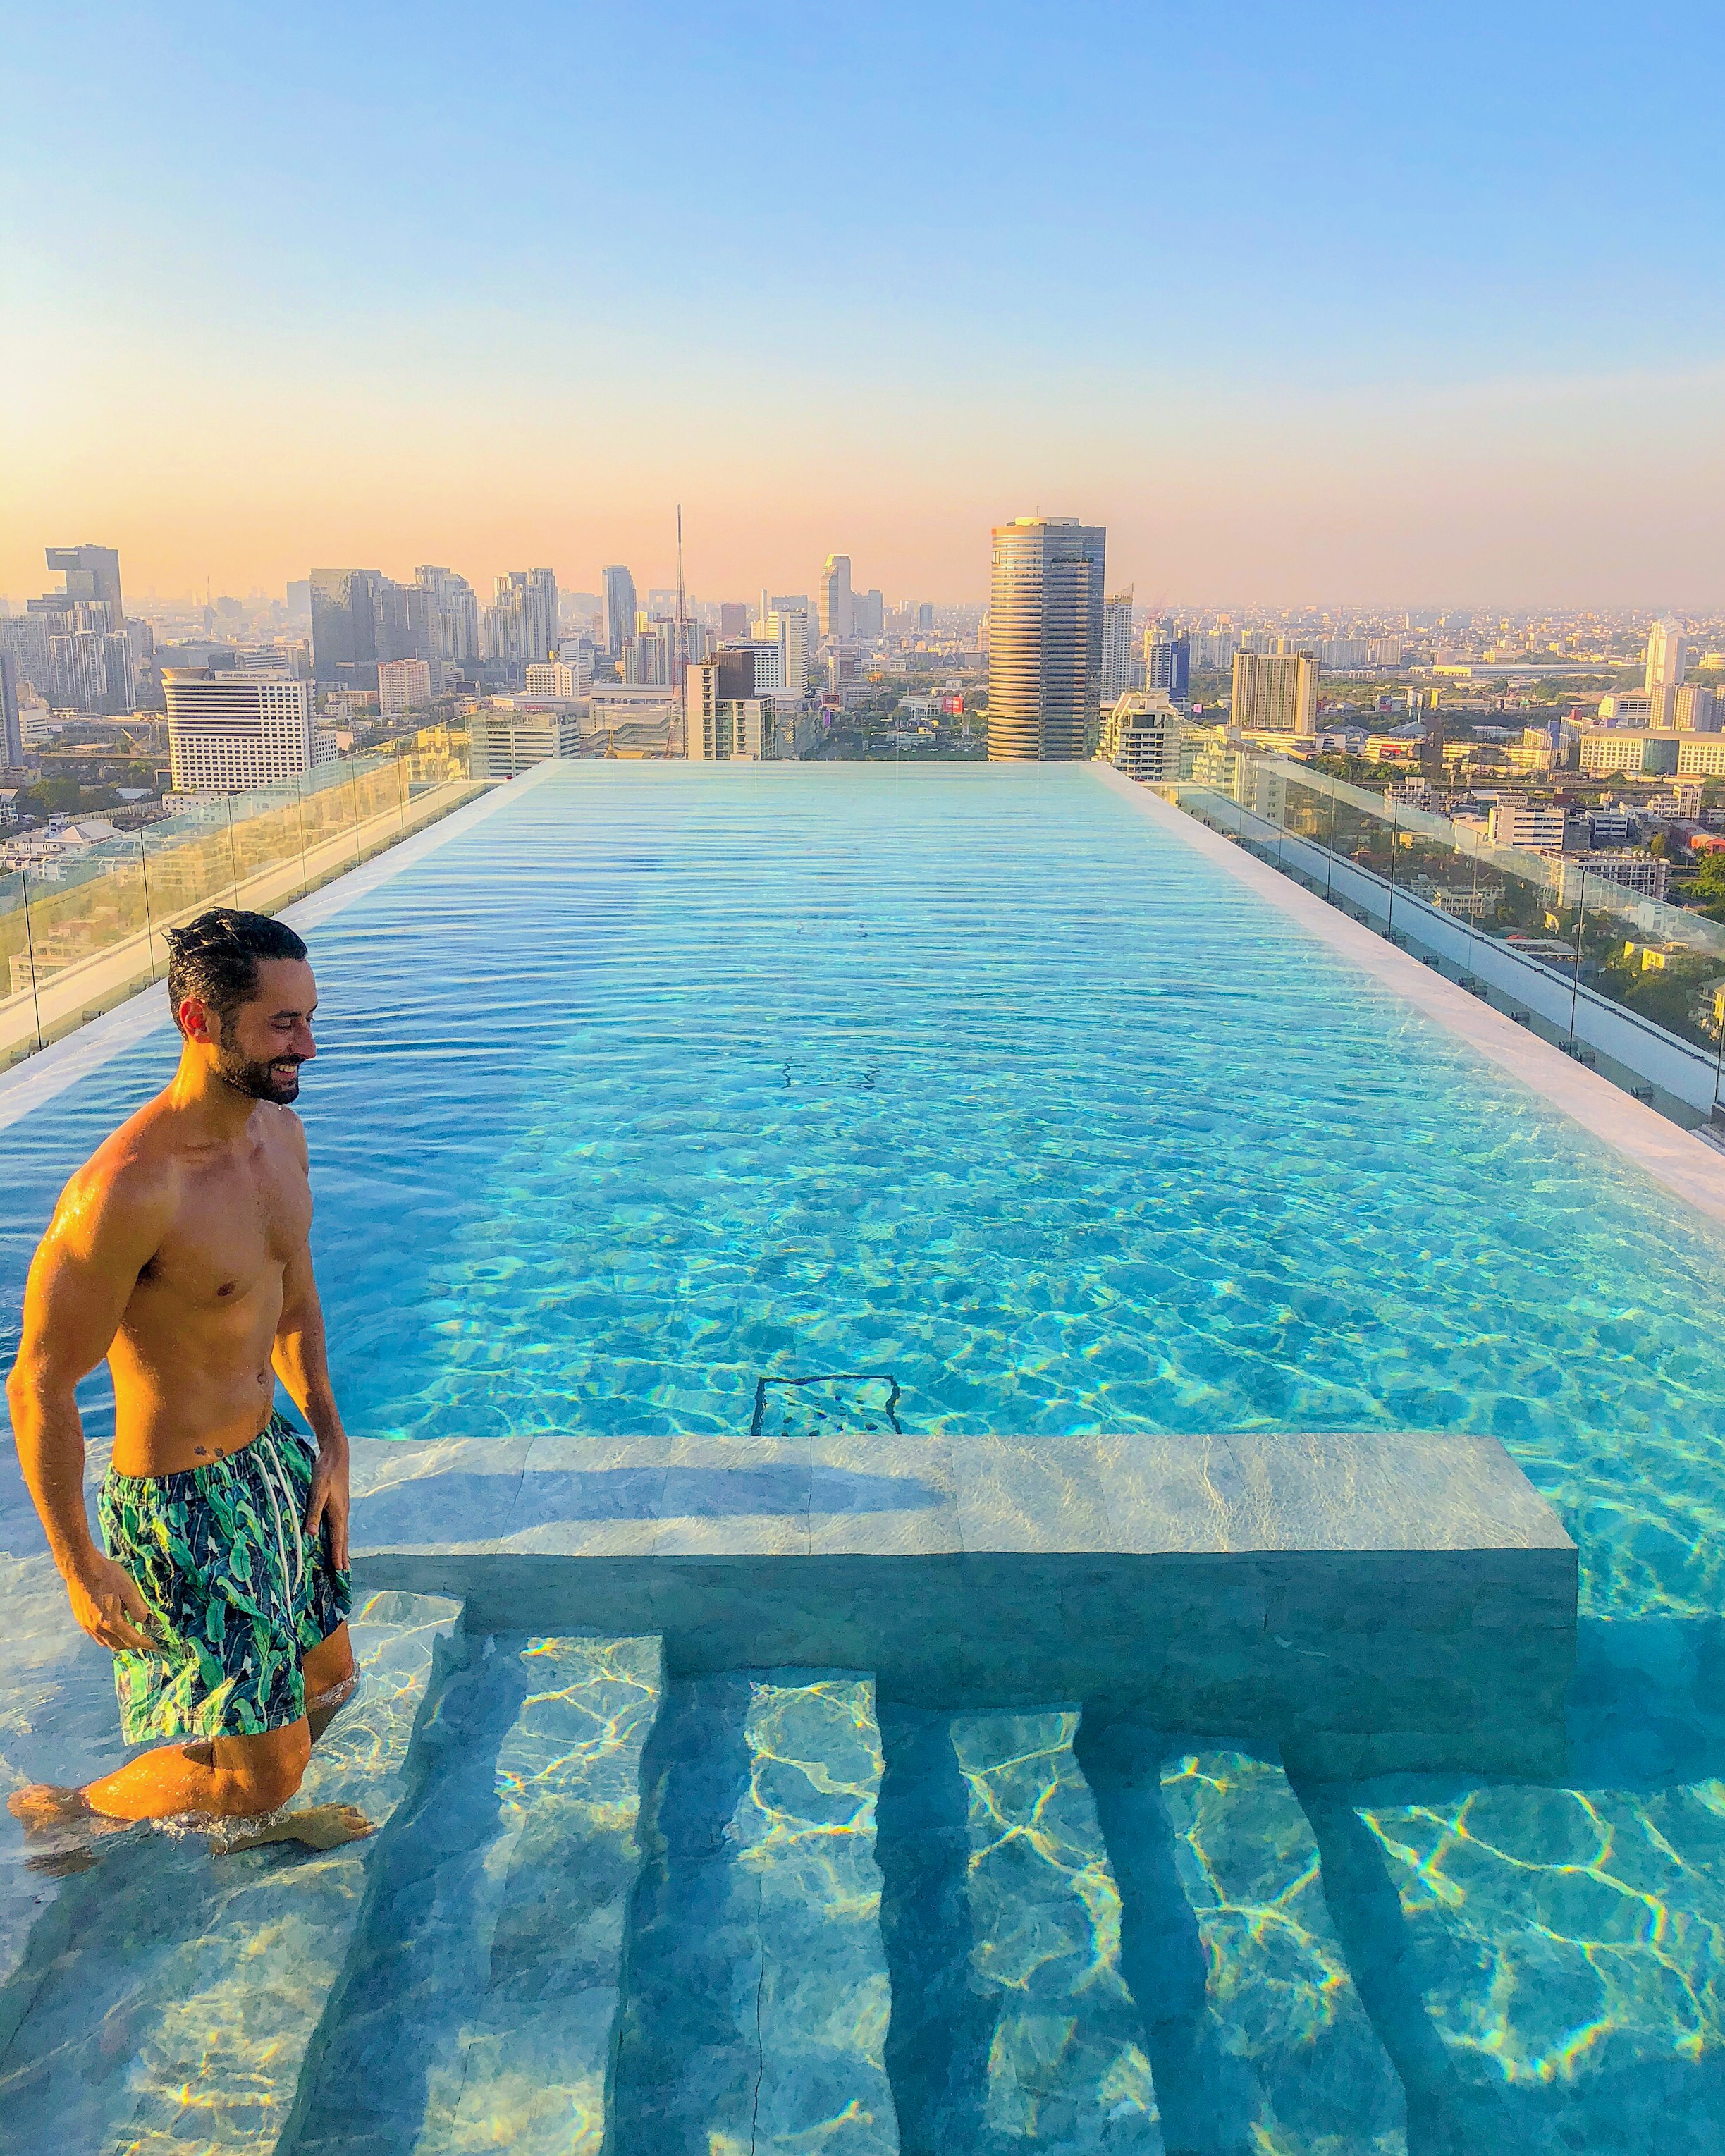  O 137 Pillars Suites and Residences em Bangkok é uma mistura de hotel e apartamentos. Com serviço excelente, decoração elegante, o hotel tem duas piscinas espetaculares em dois andares. A vista da cidade é de tirar o fôlego. 